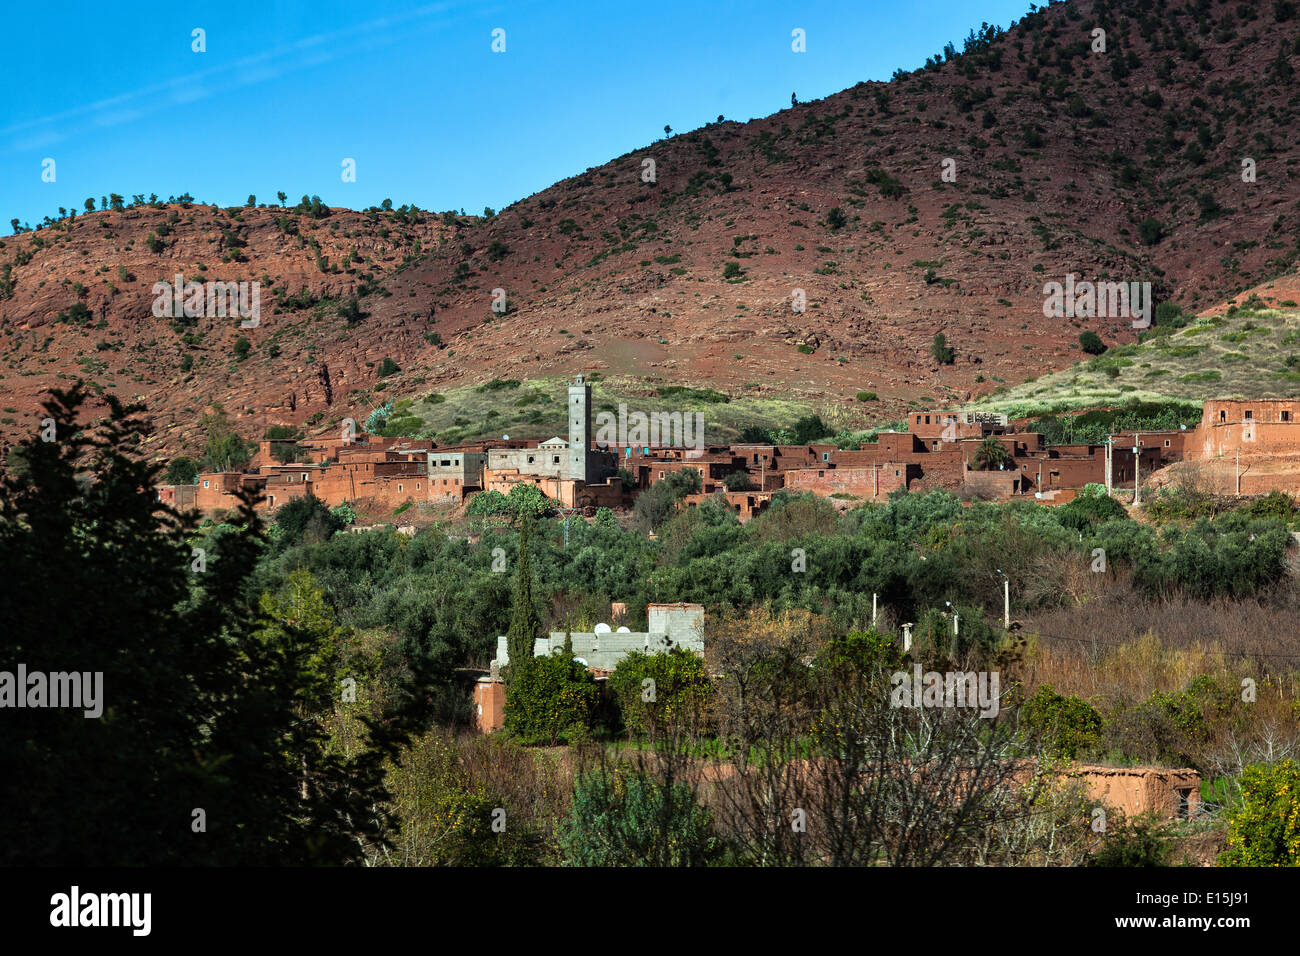 Village de l'arrière-pays du Maroc Banque D'Images